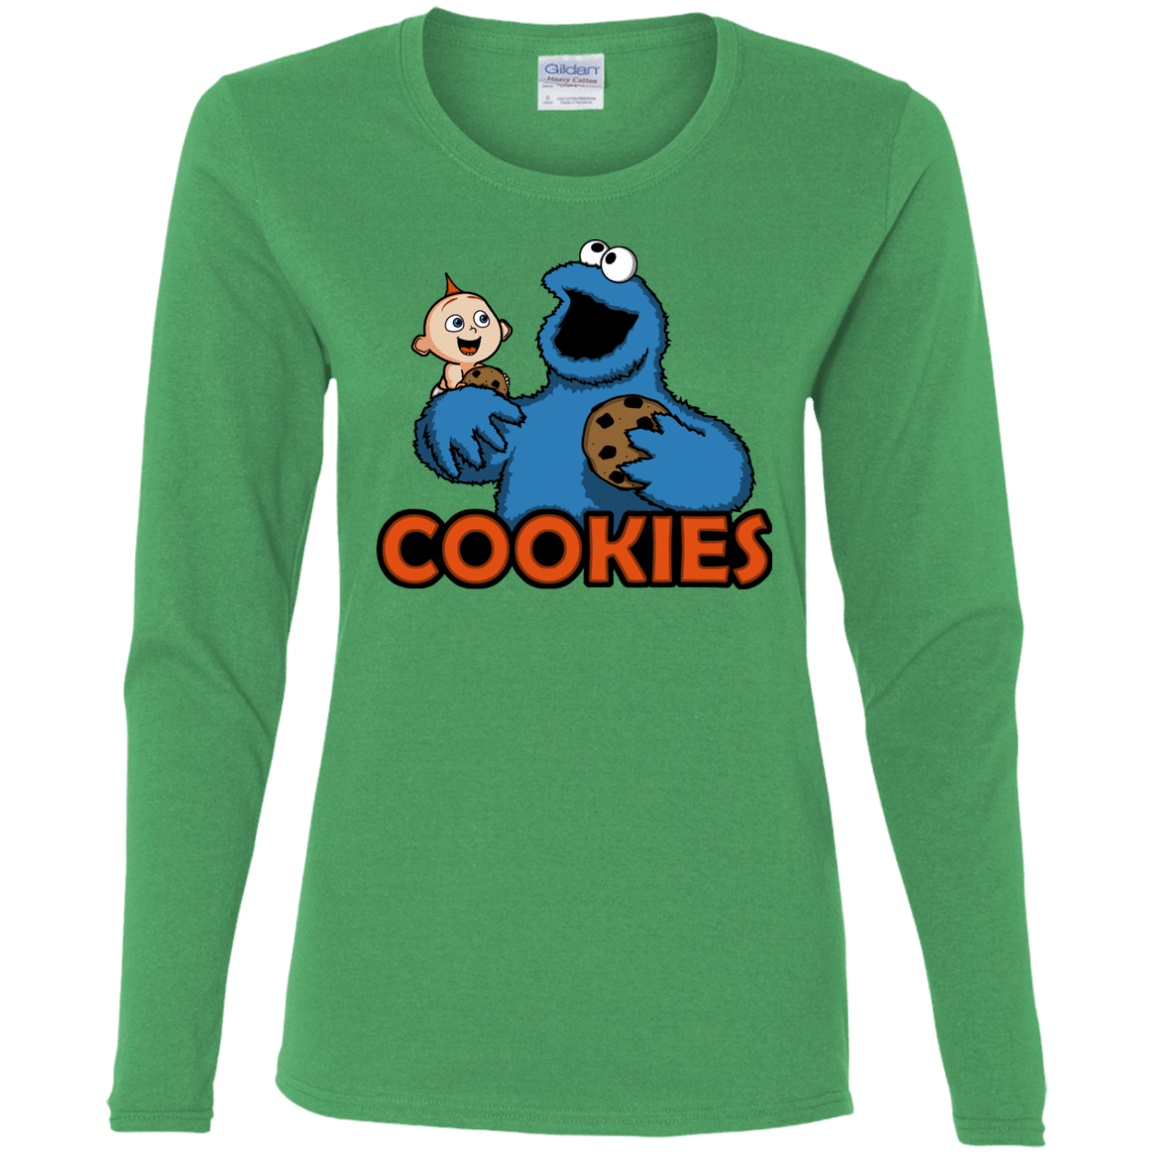 T-Shirts Irish Green / S Cookies Women's Long Sleeve T-Shirt